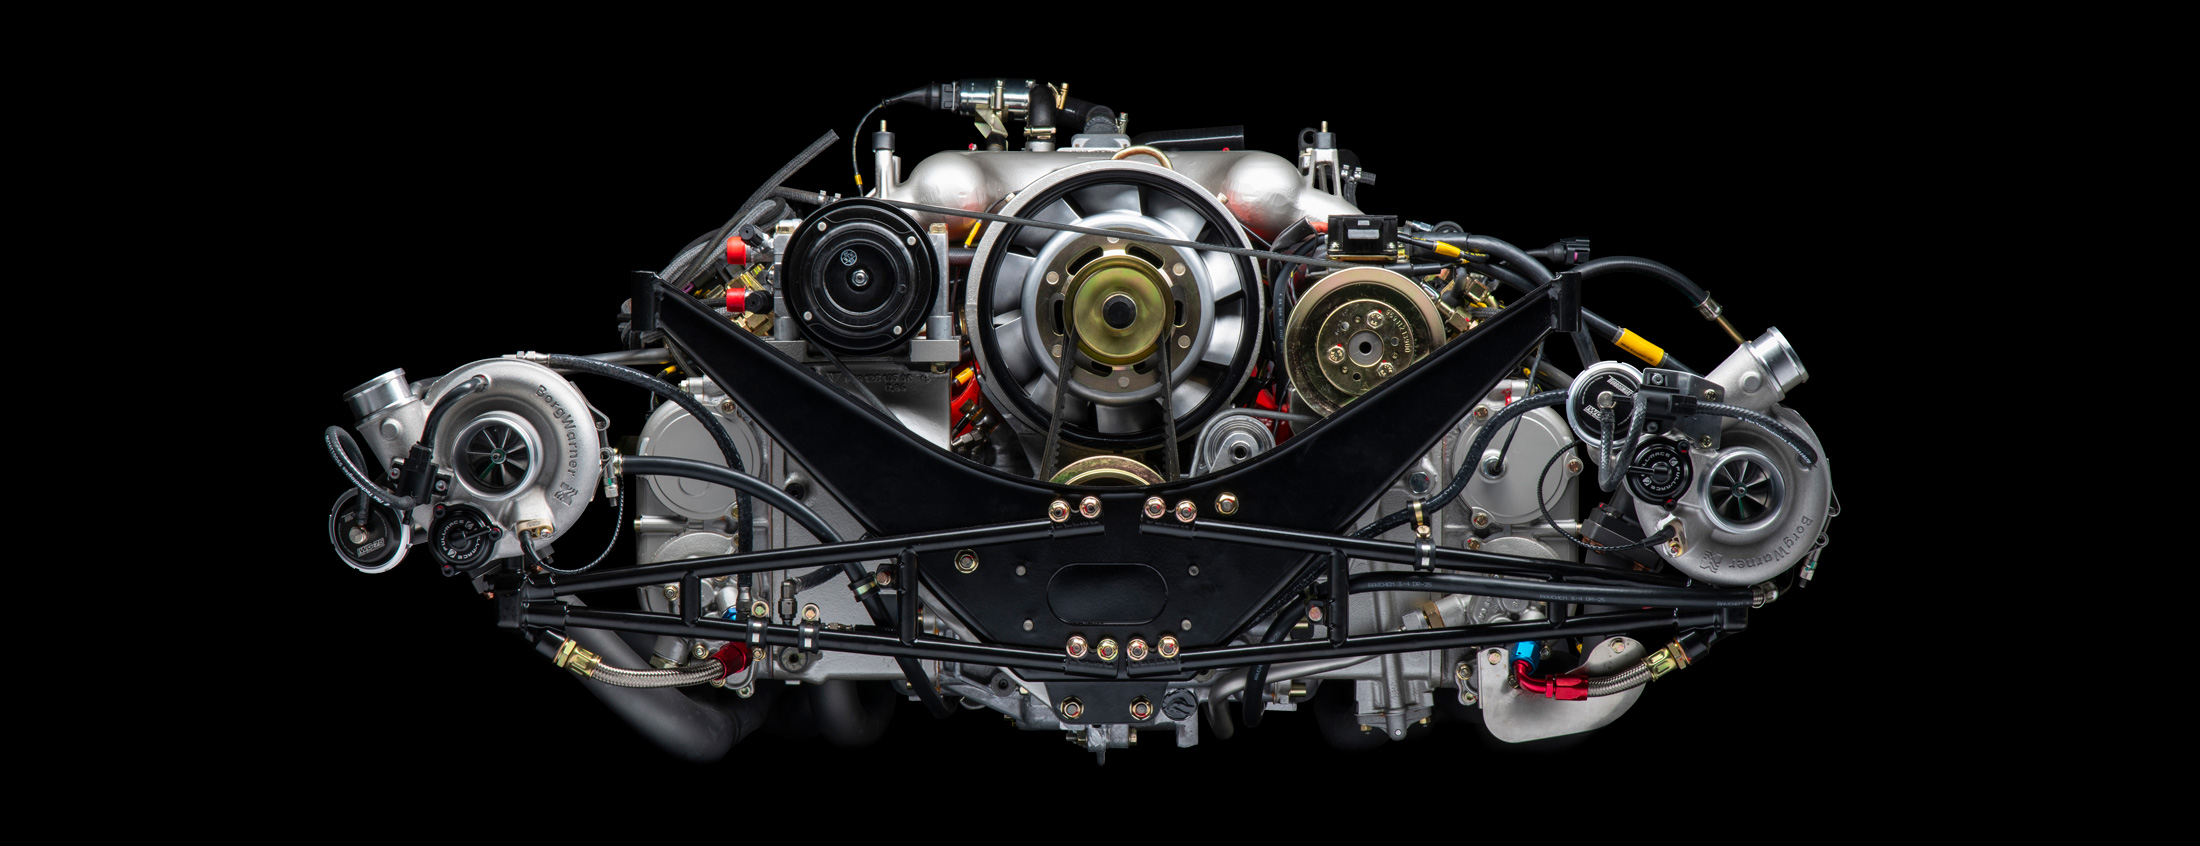 Porsche 959 engine